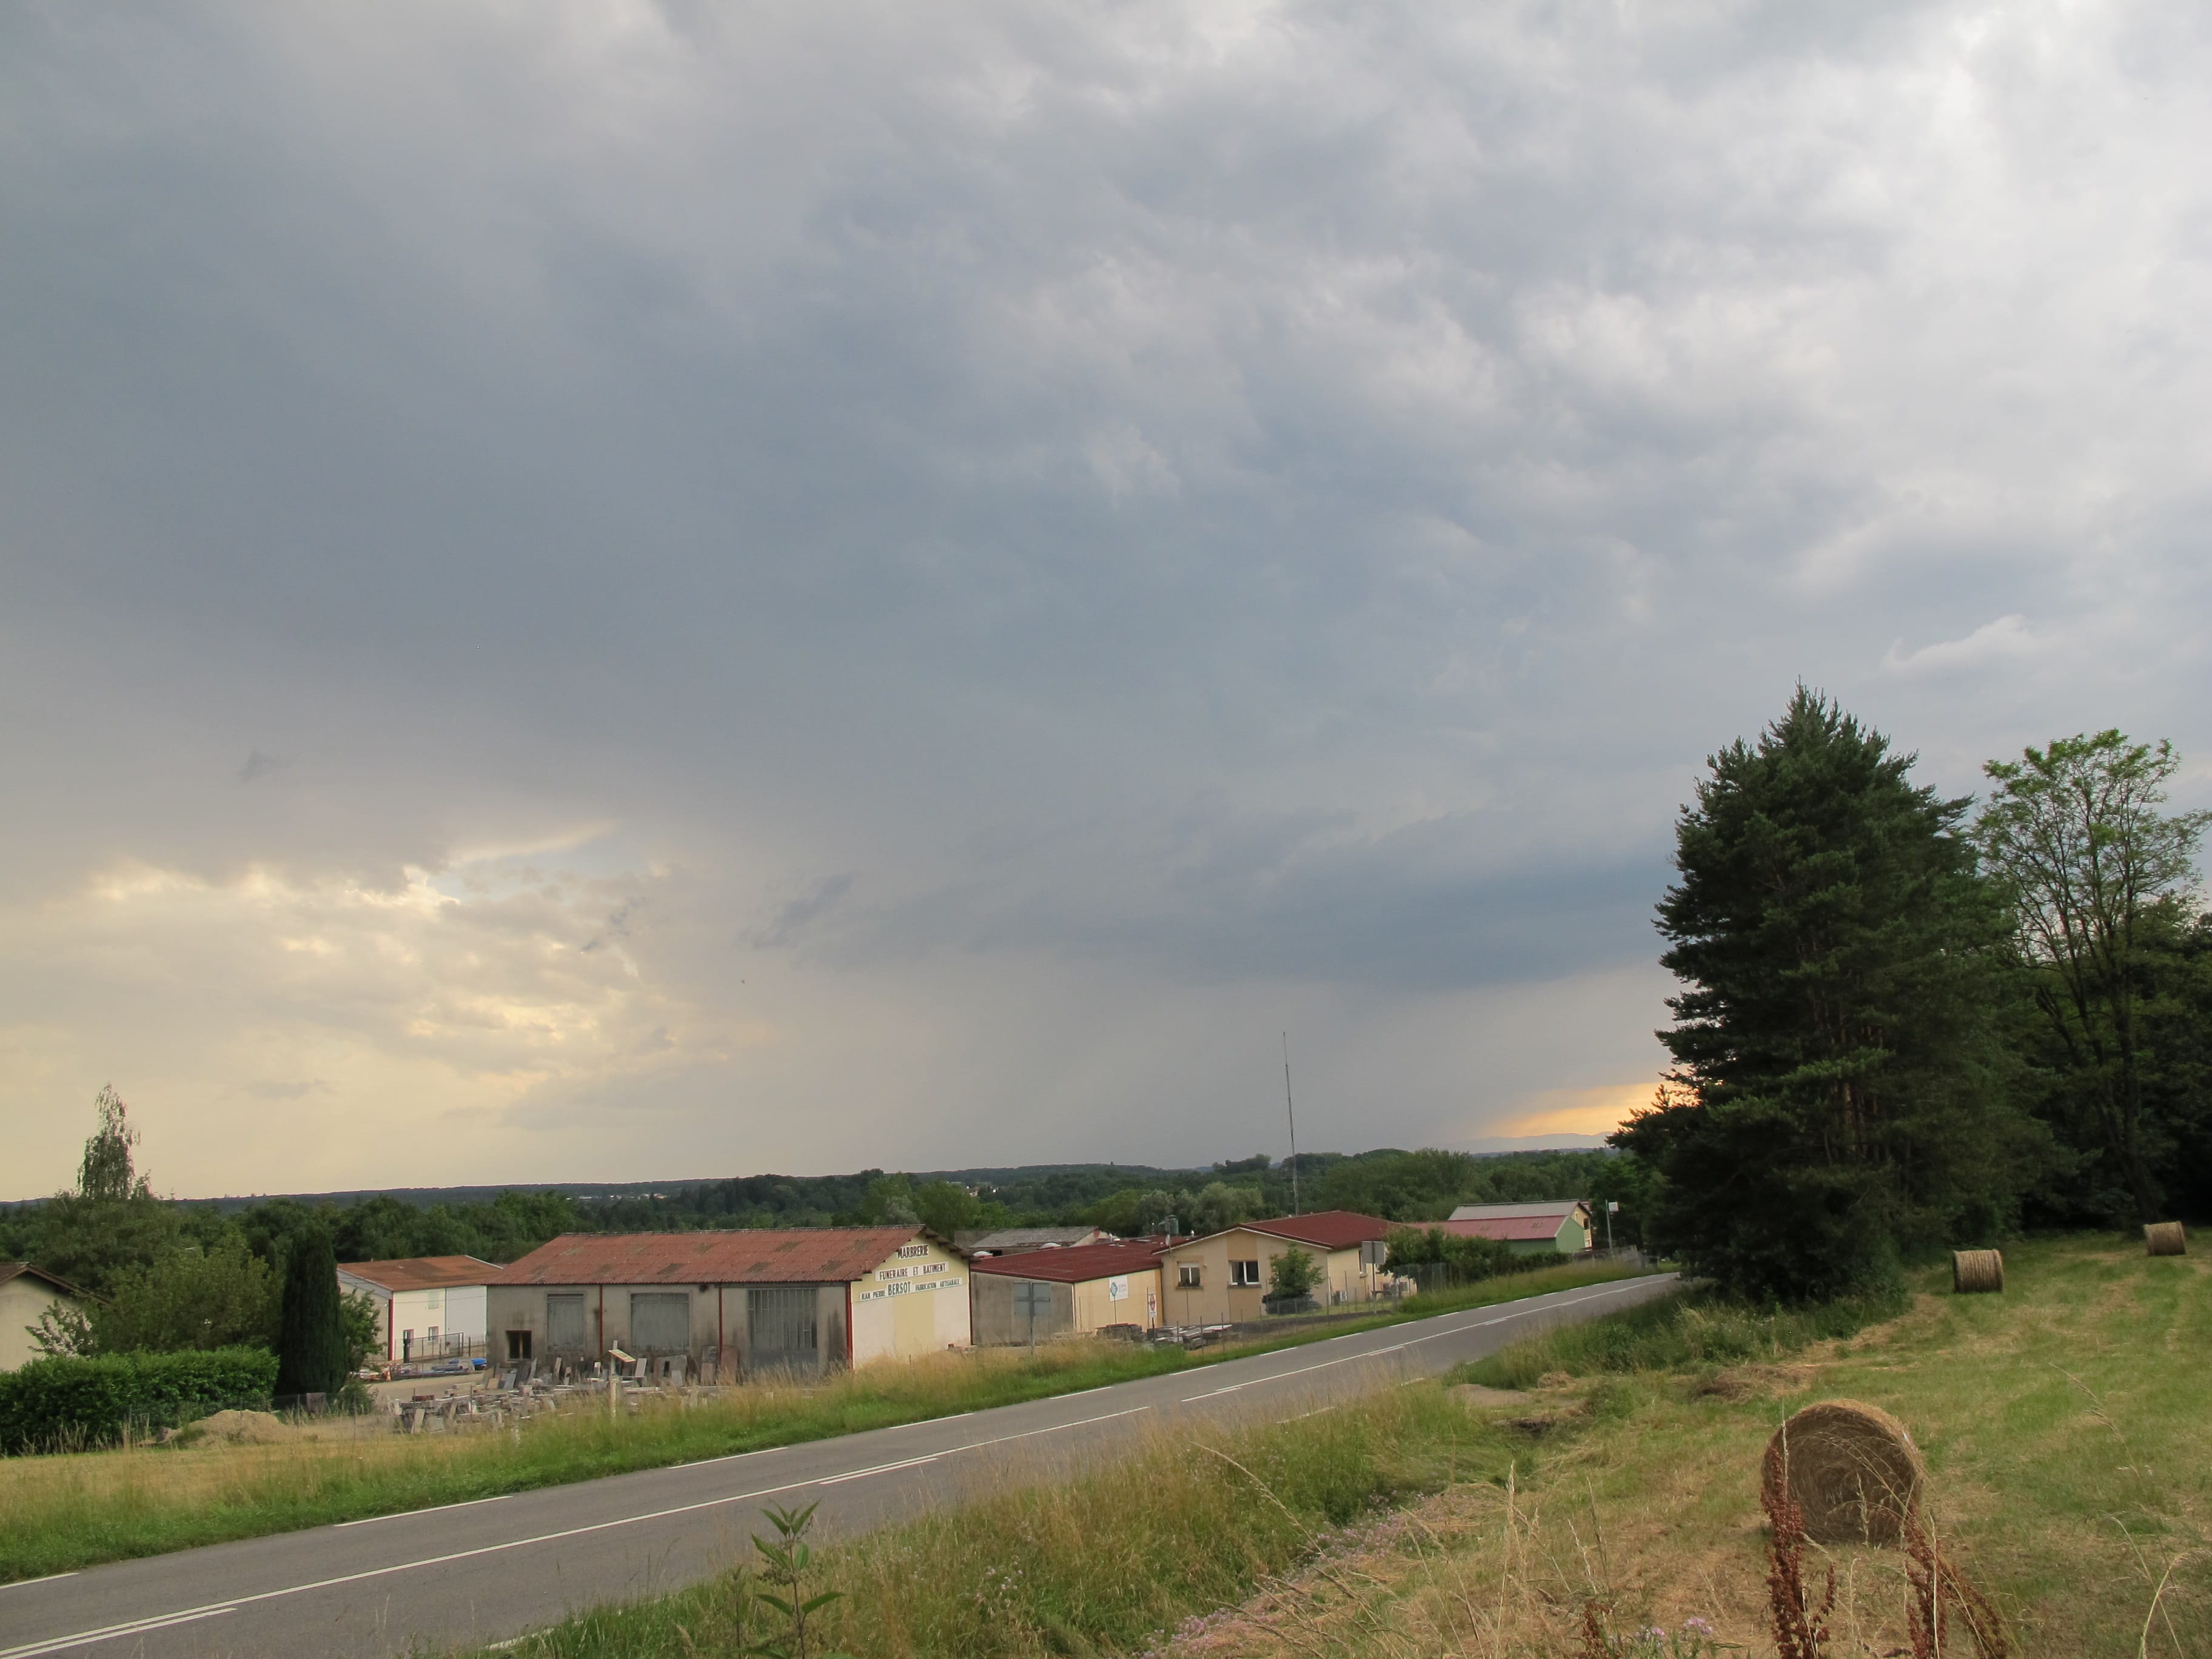 un orage au loin de Ceyzériat , vers bourg en bresse - 29/06/2016 22:25 - david drencourt